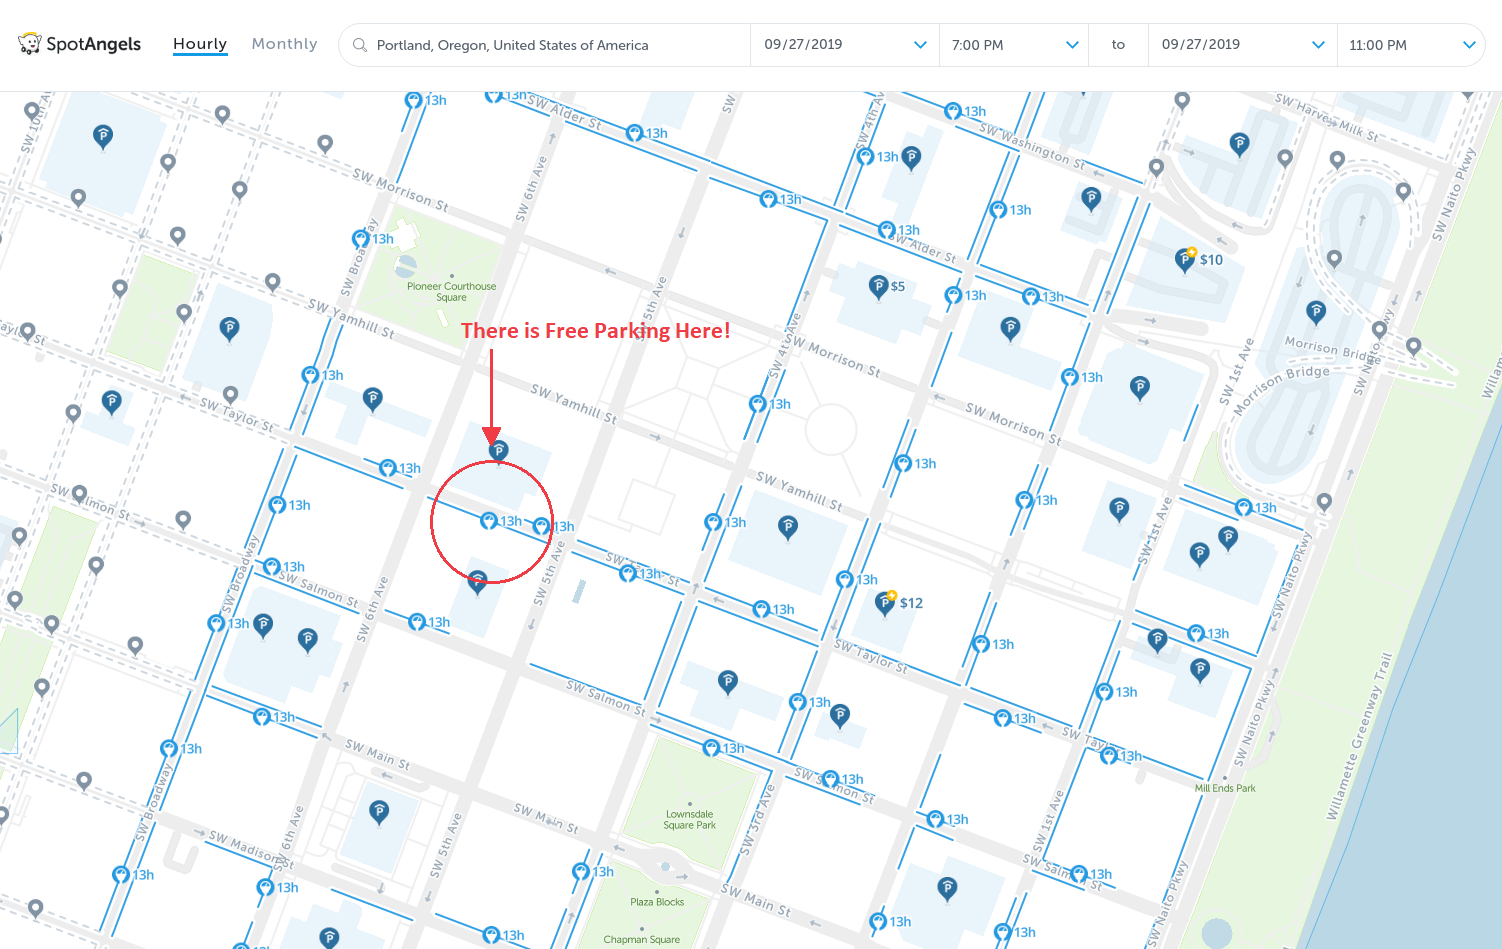 map of free parking in Portland - SpotAngels